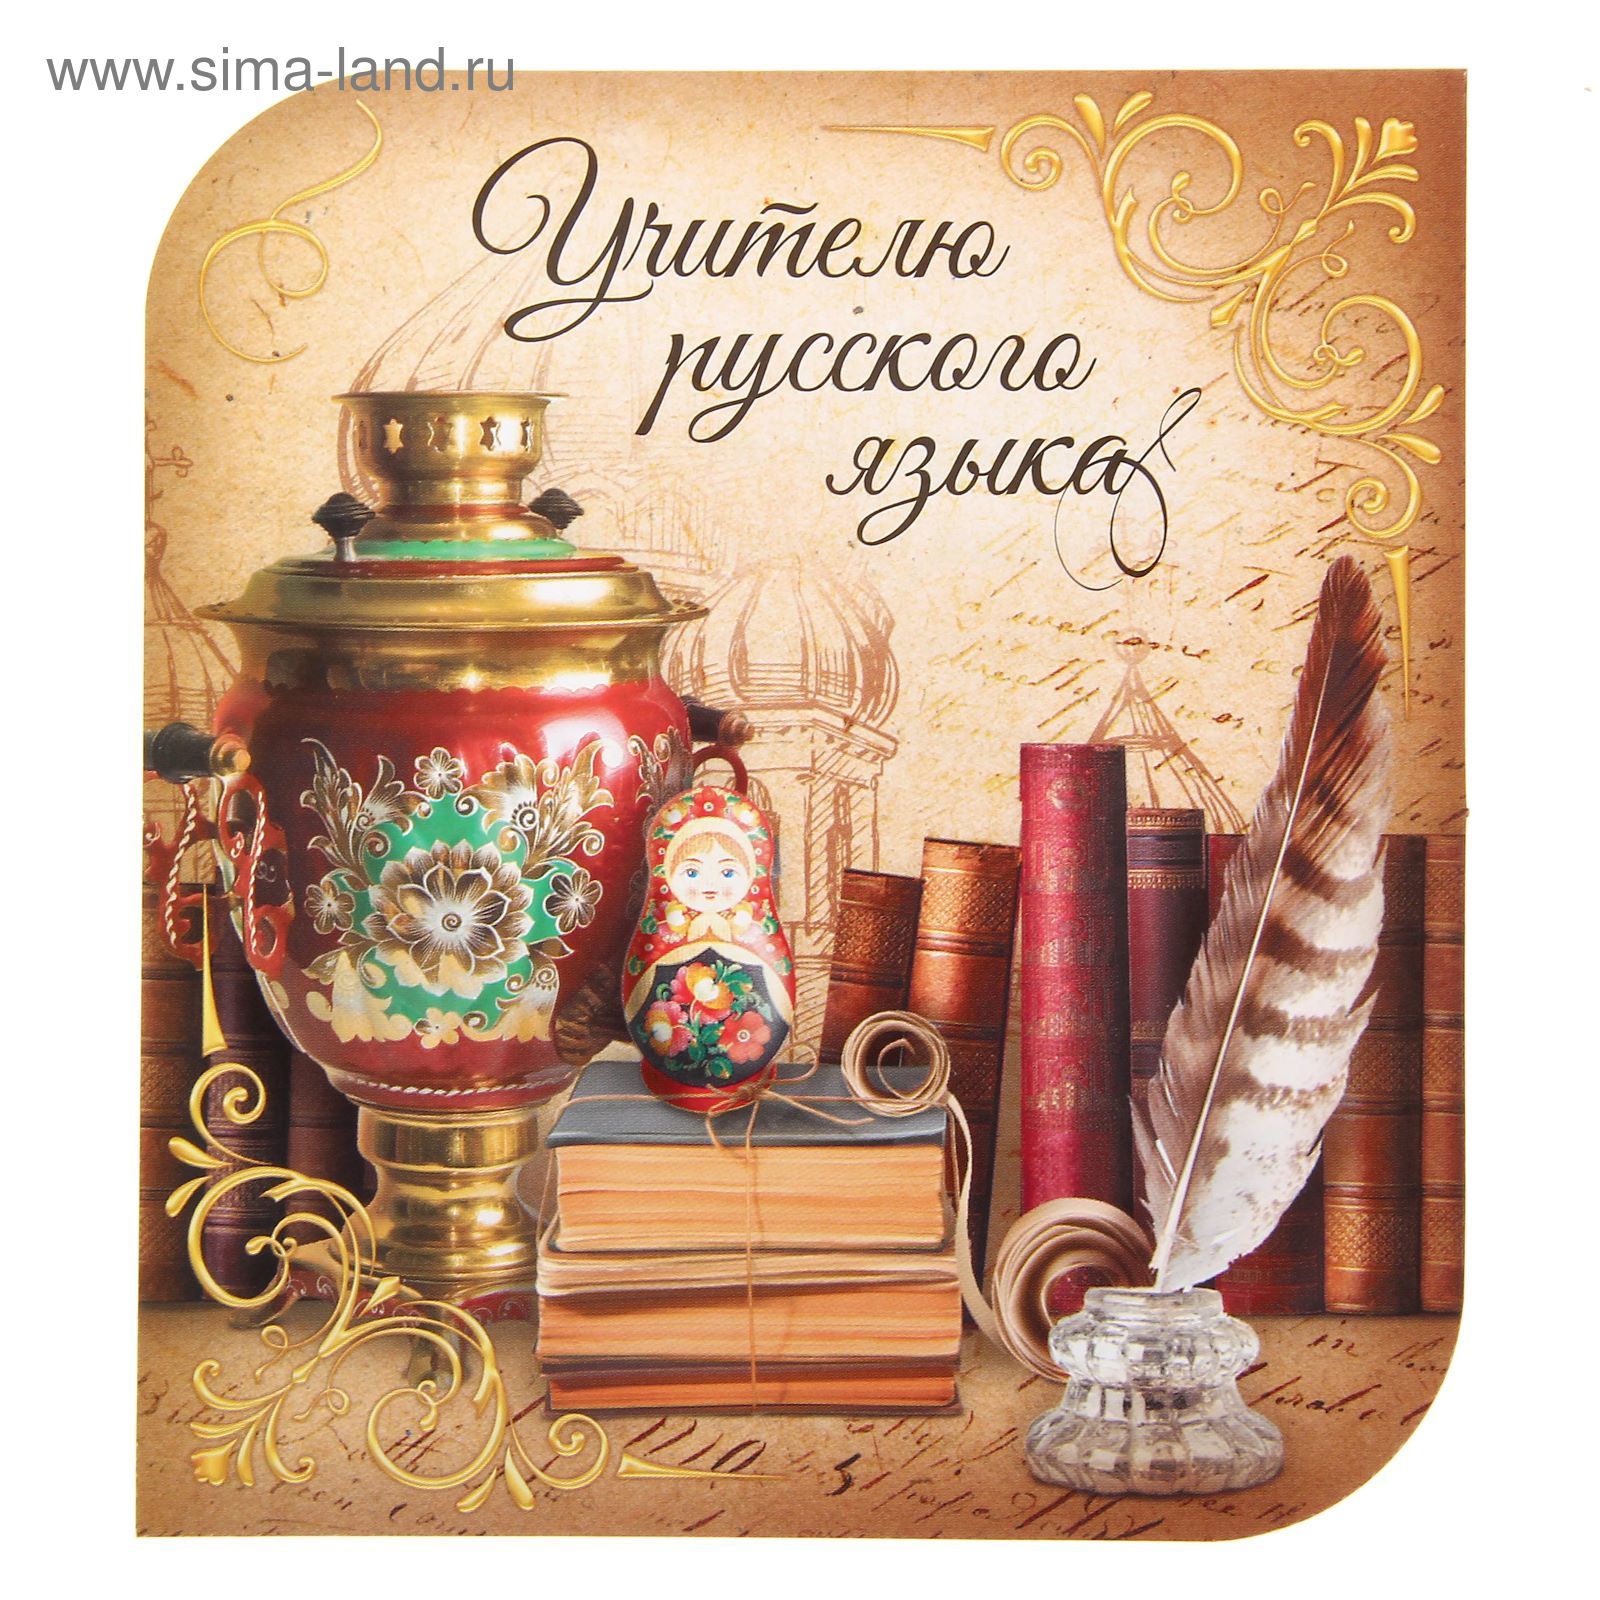 Поздравление учителя Русского языка с Днем учителя